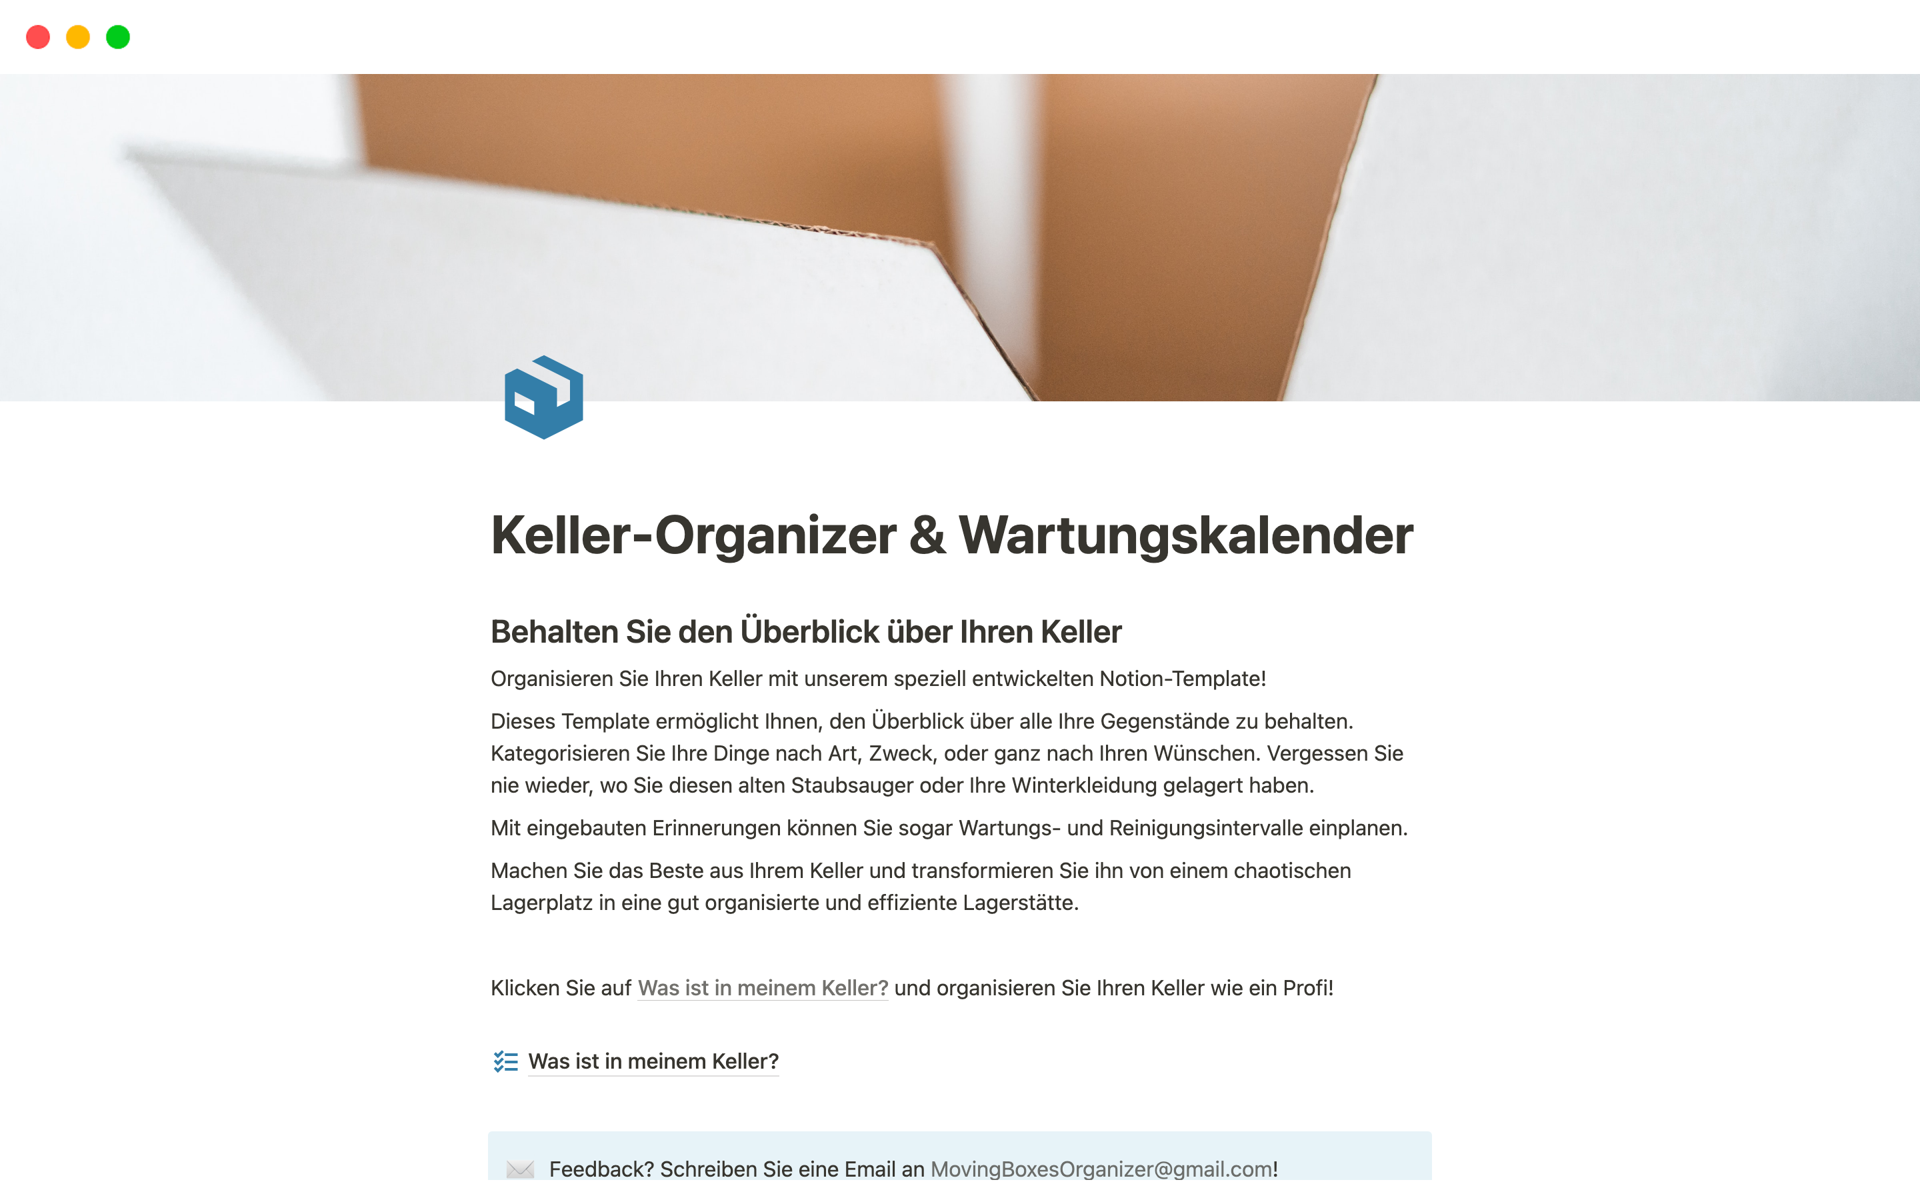 Aperçu du modèle de Keller-Organizer & Wartungskalender